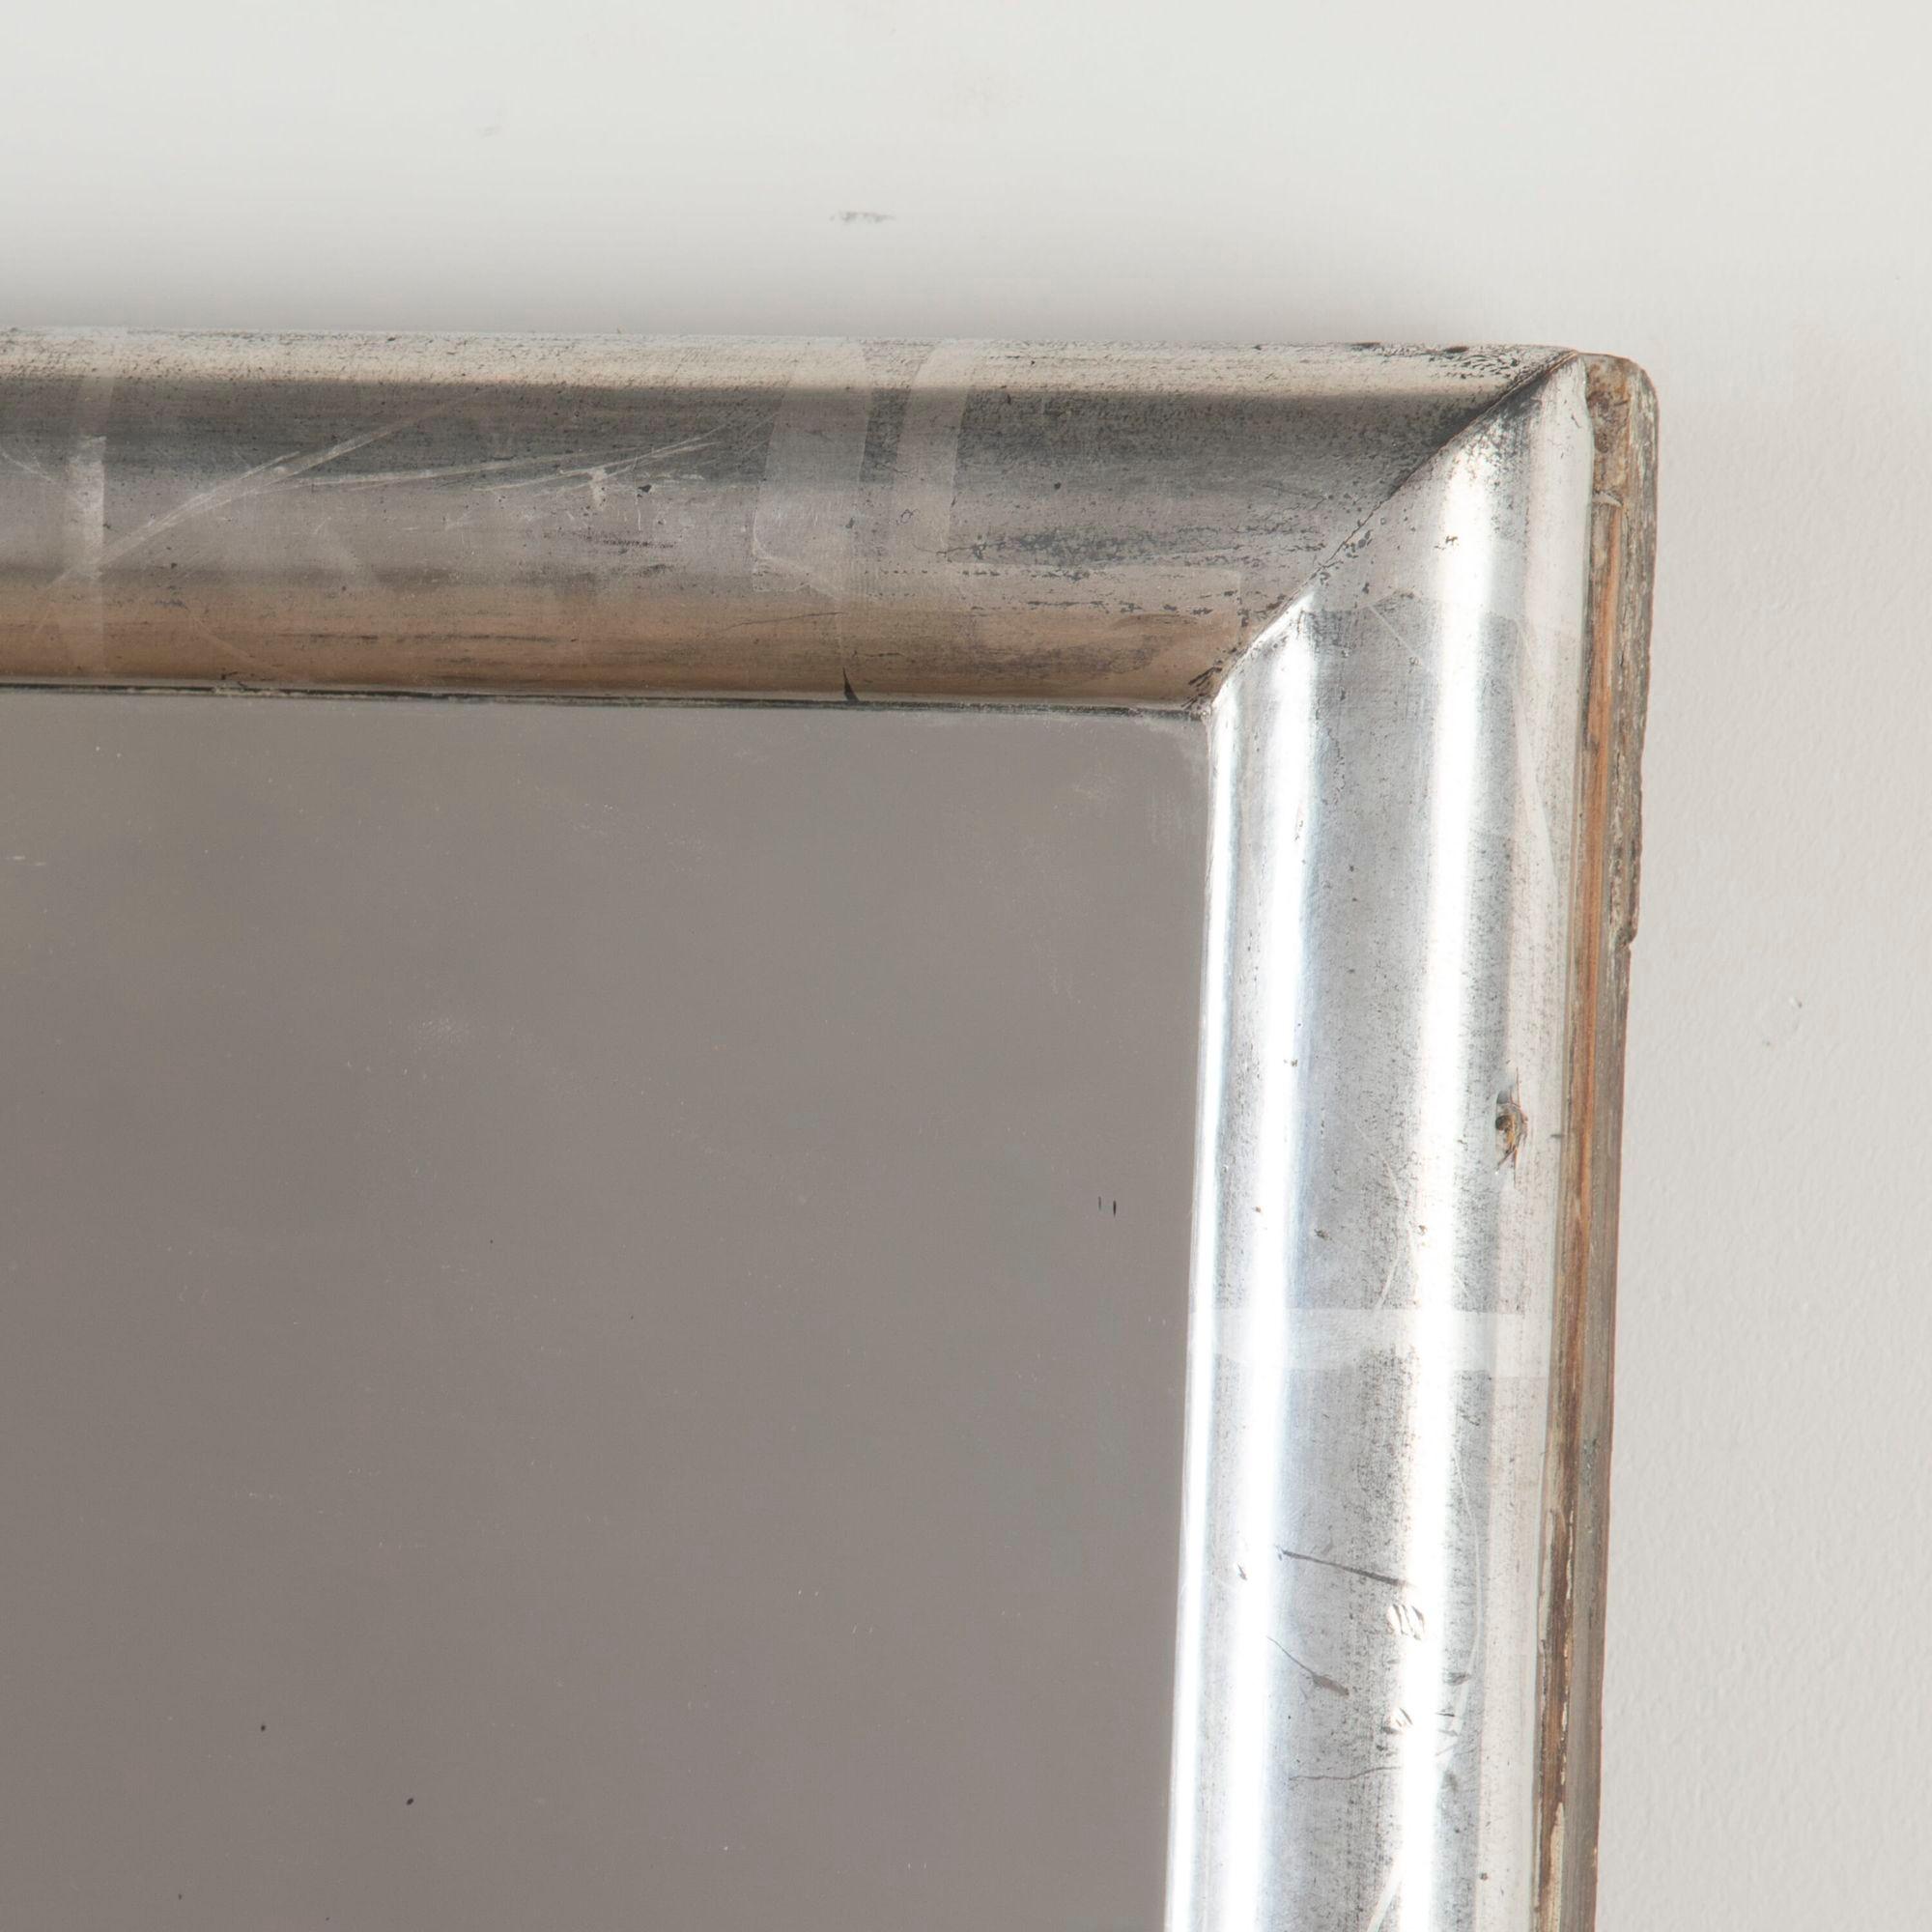 Silberner Bistrospiegel aus dem späten 19. Jahrhundert mit Originalplatte.
Diese eleganten, schlichten Rahmen waren zu ihrer Zeit sehr modern und spiegelten die Verachtung der Impressionisten für jede Art von Dekoration wider.
Sie wurden in der